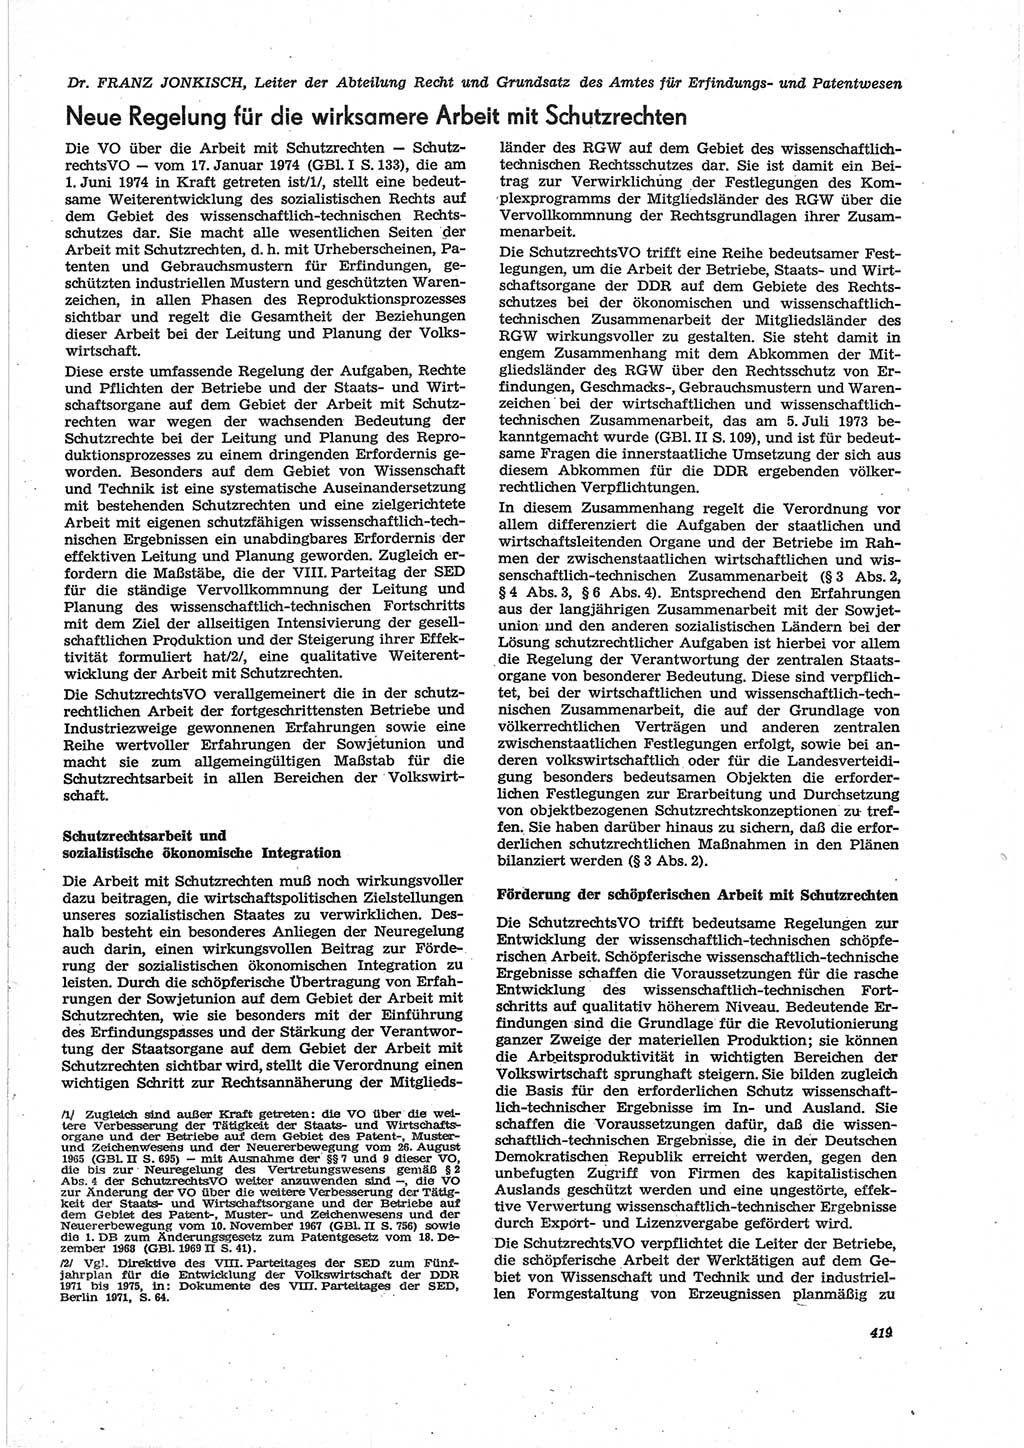 Neue Justiz (NJ), Zeitschrift für Recht und Rechtswissenschaft [Deutsche Demokratische Republik (DDR)], 28. Jahrgang 1974, Seite 419 (NJ DDR 1974, S. 419)